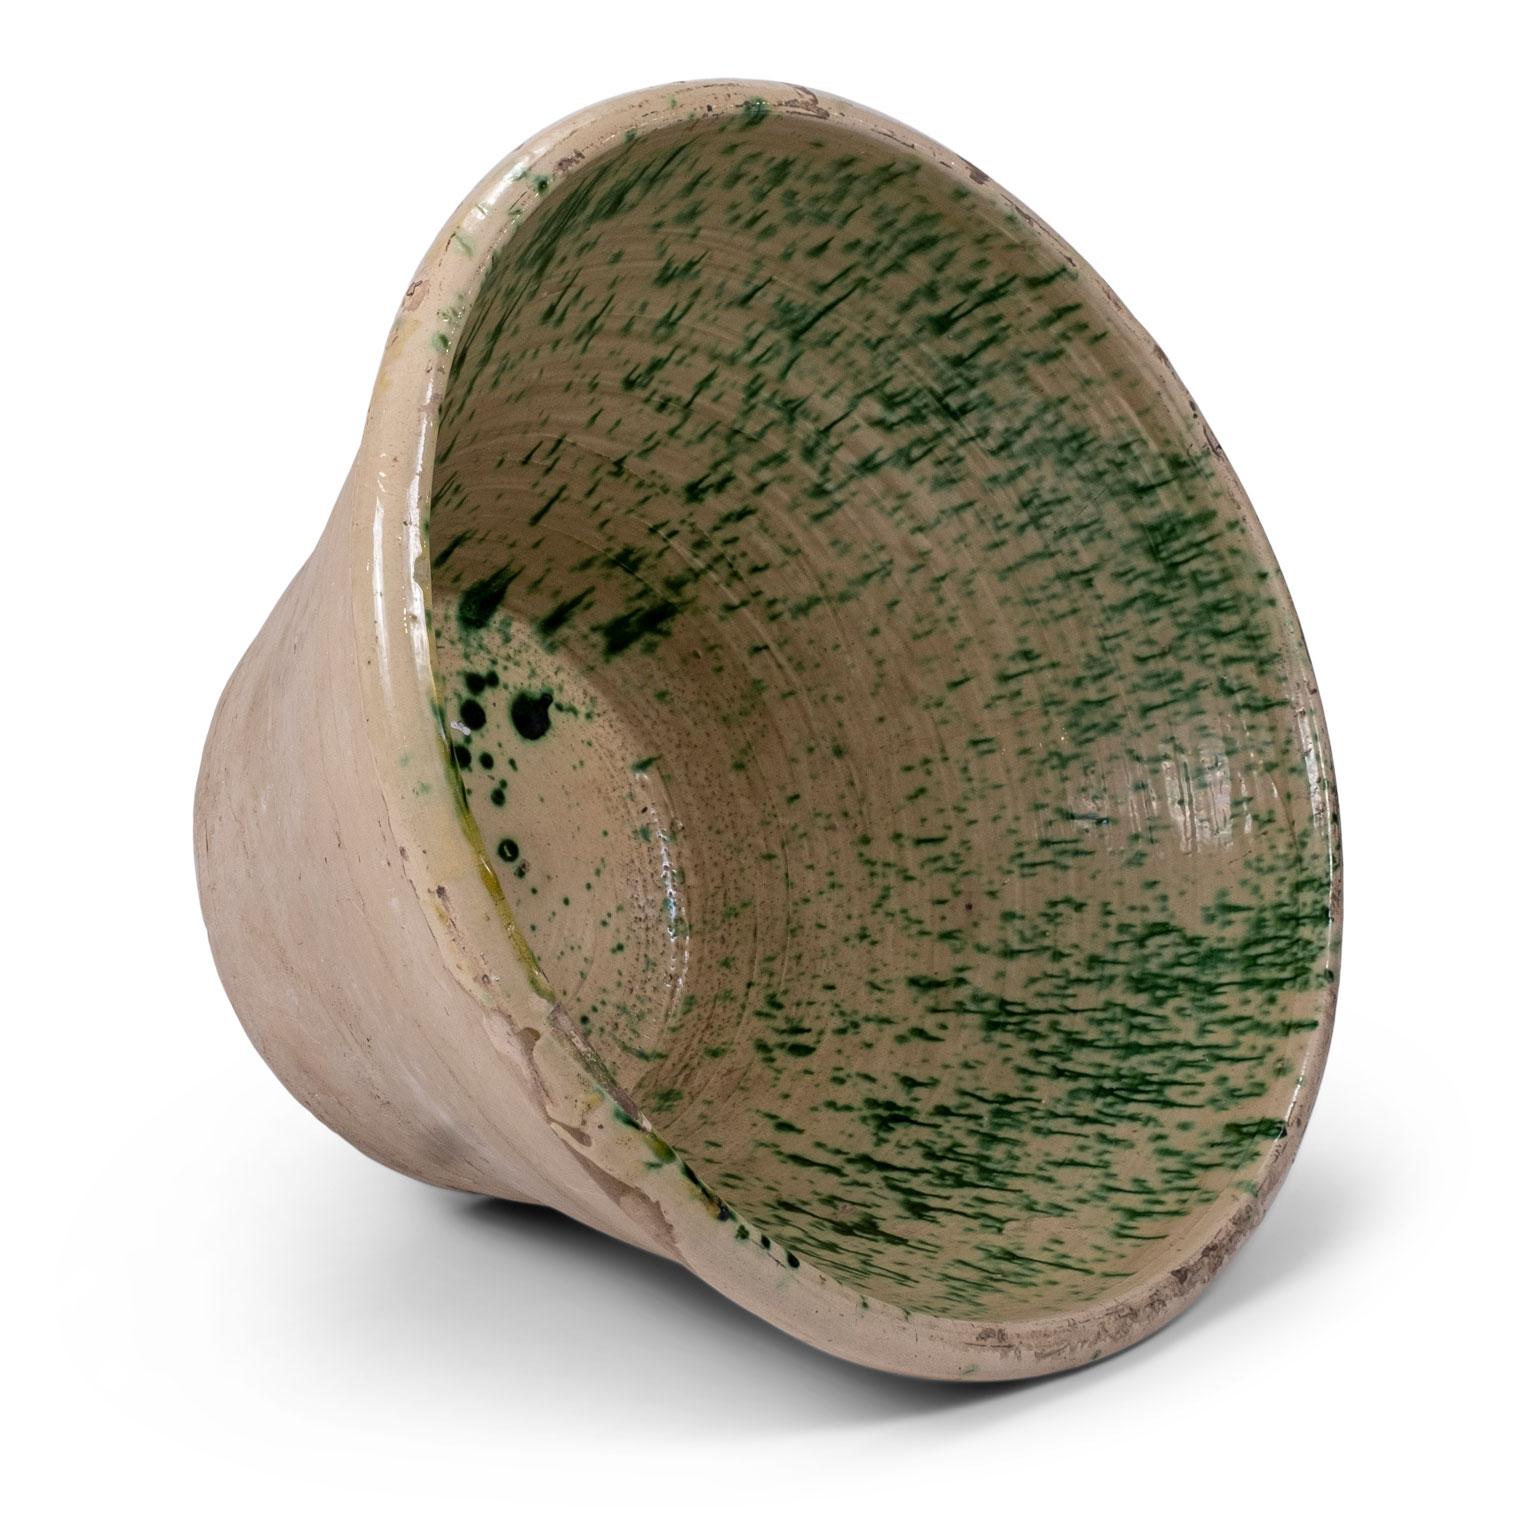 Très grand bol à passata en terre vernissée colorée du sud de l'Italie (Pouilles). Ce bol rustique en terre cuite du XIXe siècle était utilisé dans la campagne italienne pour préparer la passata de tomates. Fabriqué à la main et émaillé d'un motif